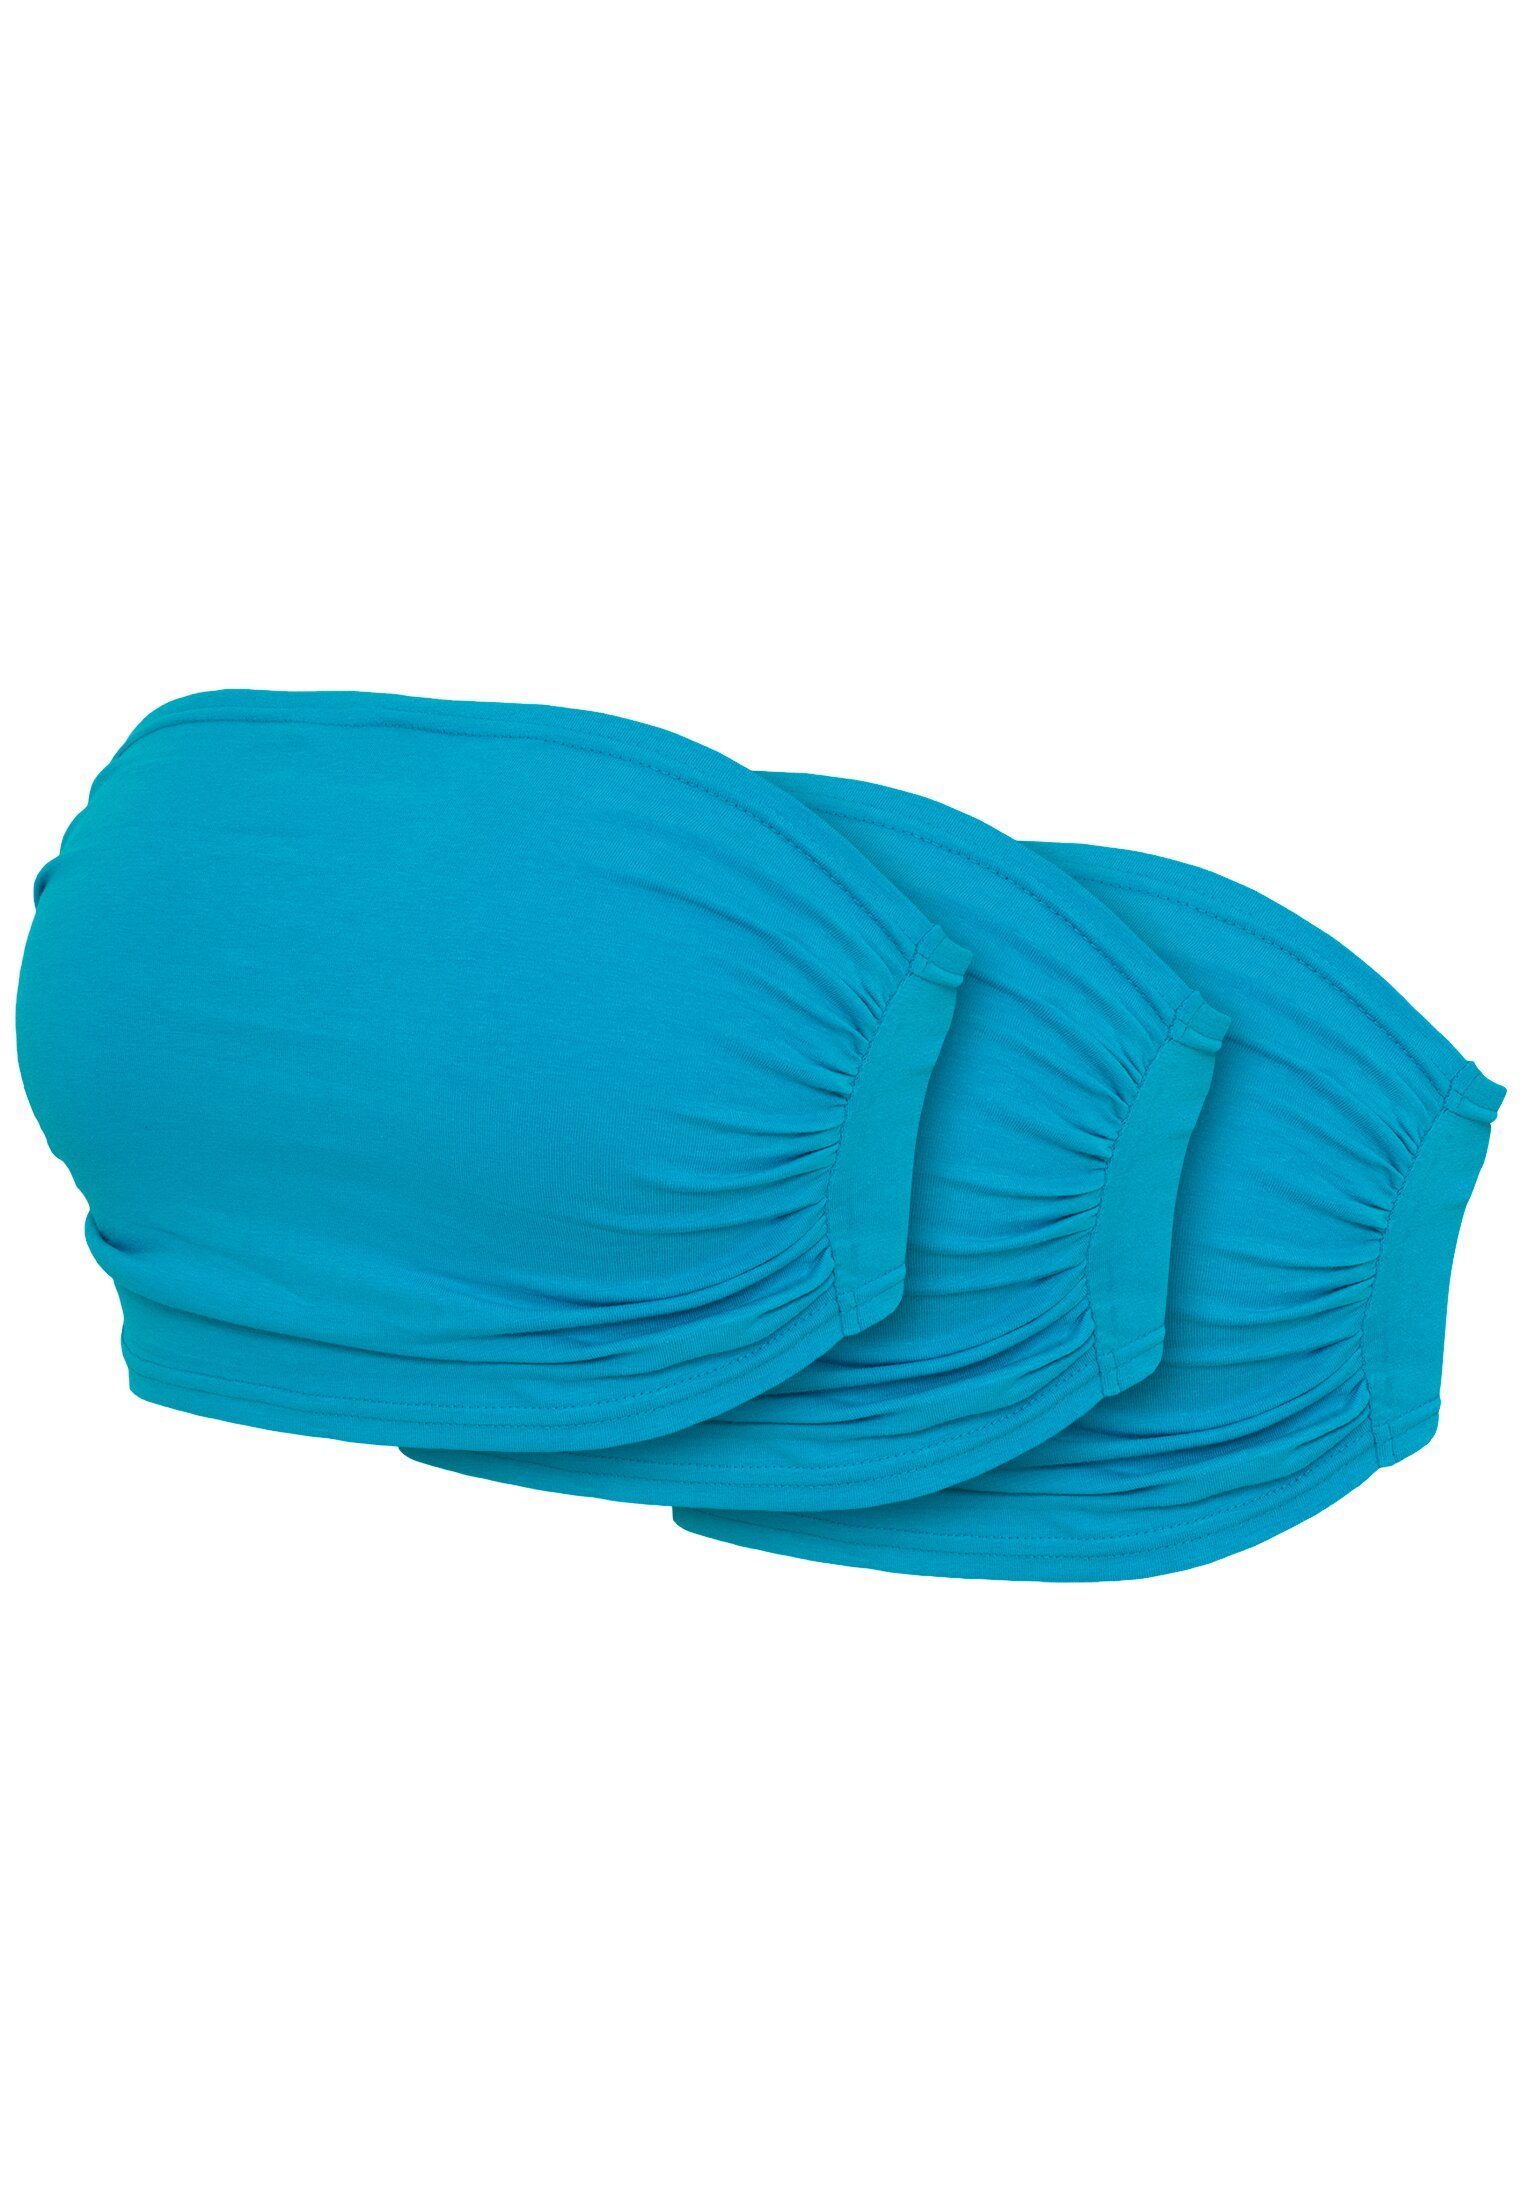 URBAN CLASSICS Bügelloser BH 3-Pack Ladies Damen Top Bandeau turquoise+turquoise+turquoise